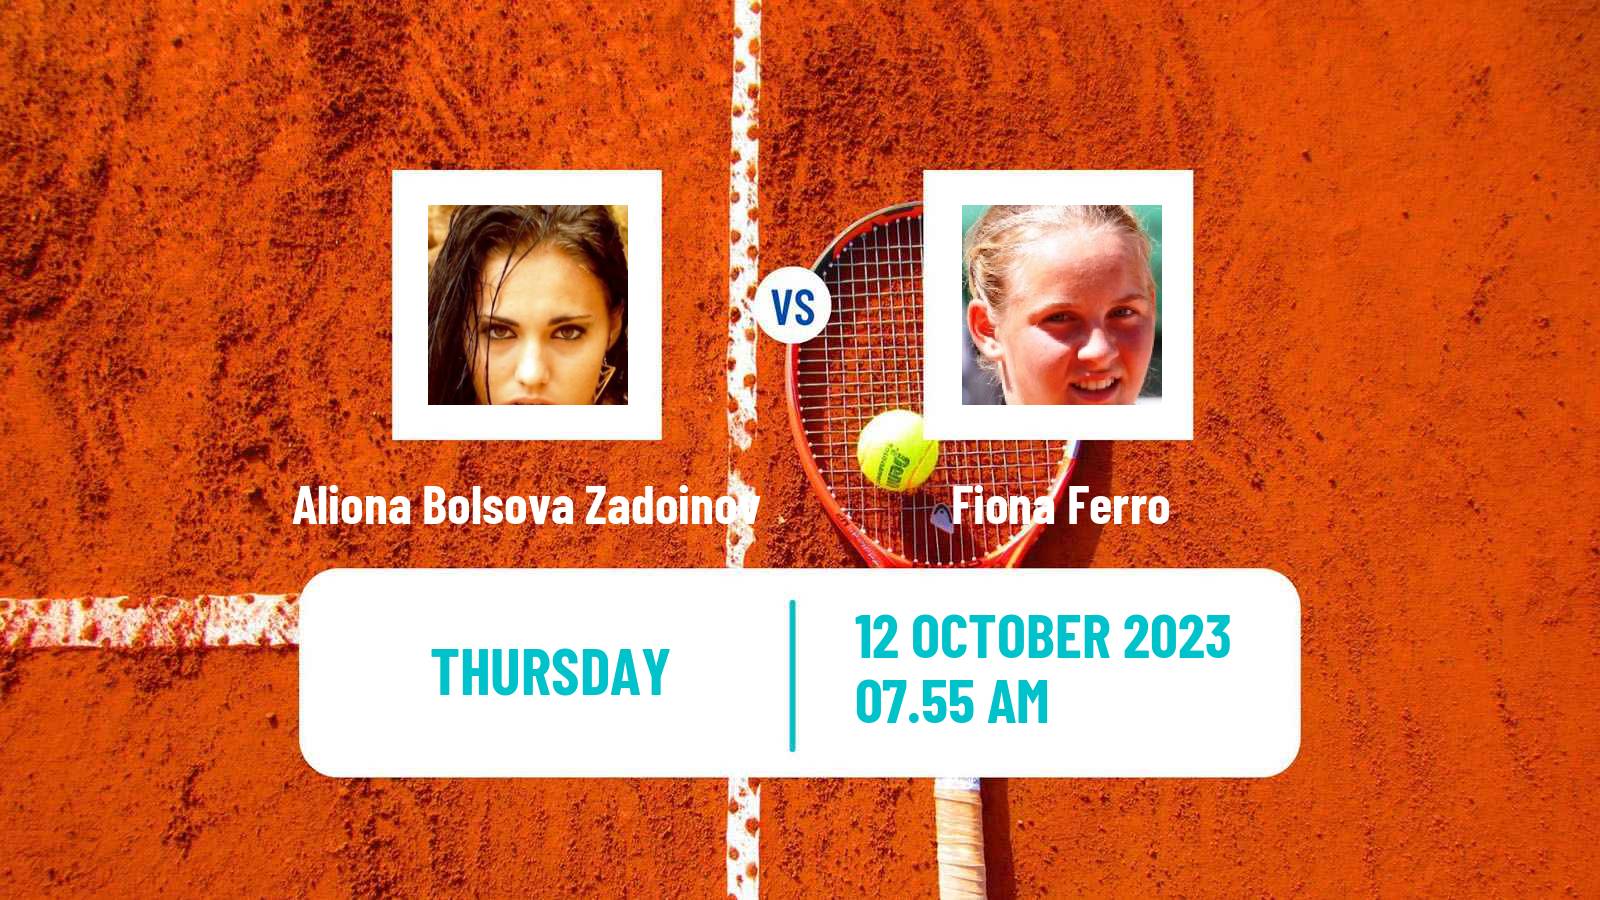 Tennis Rouen Challenger Women Aliona Bolsova Zadoinov - Fiona Ferro